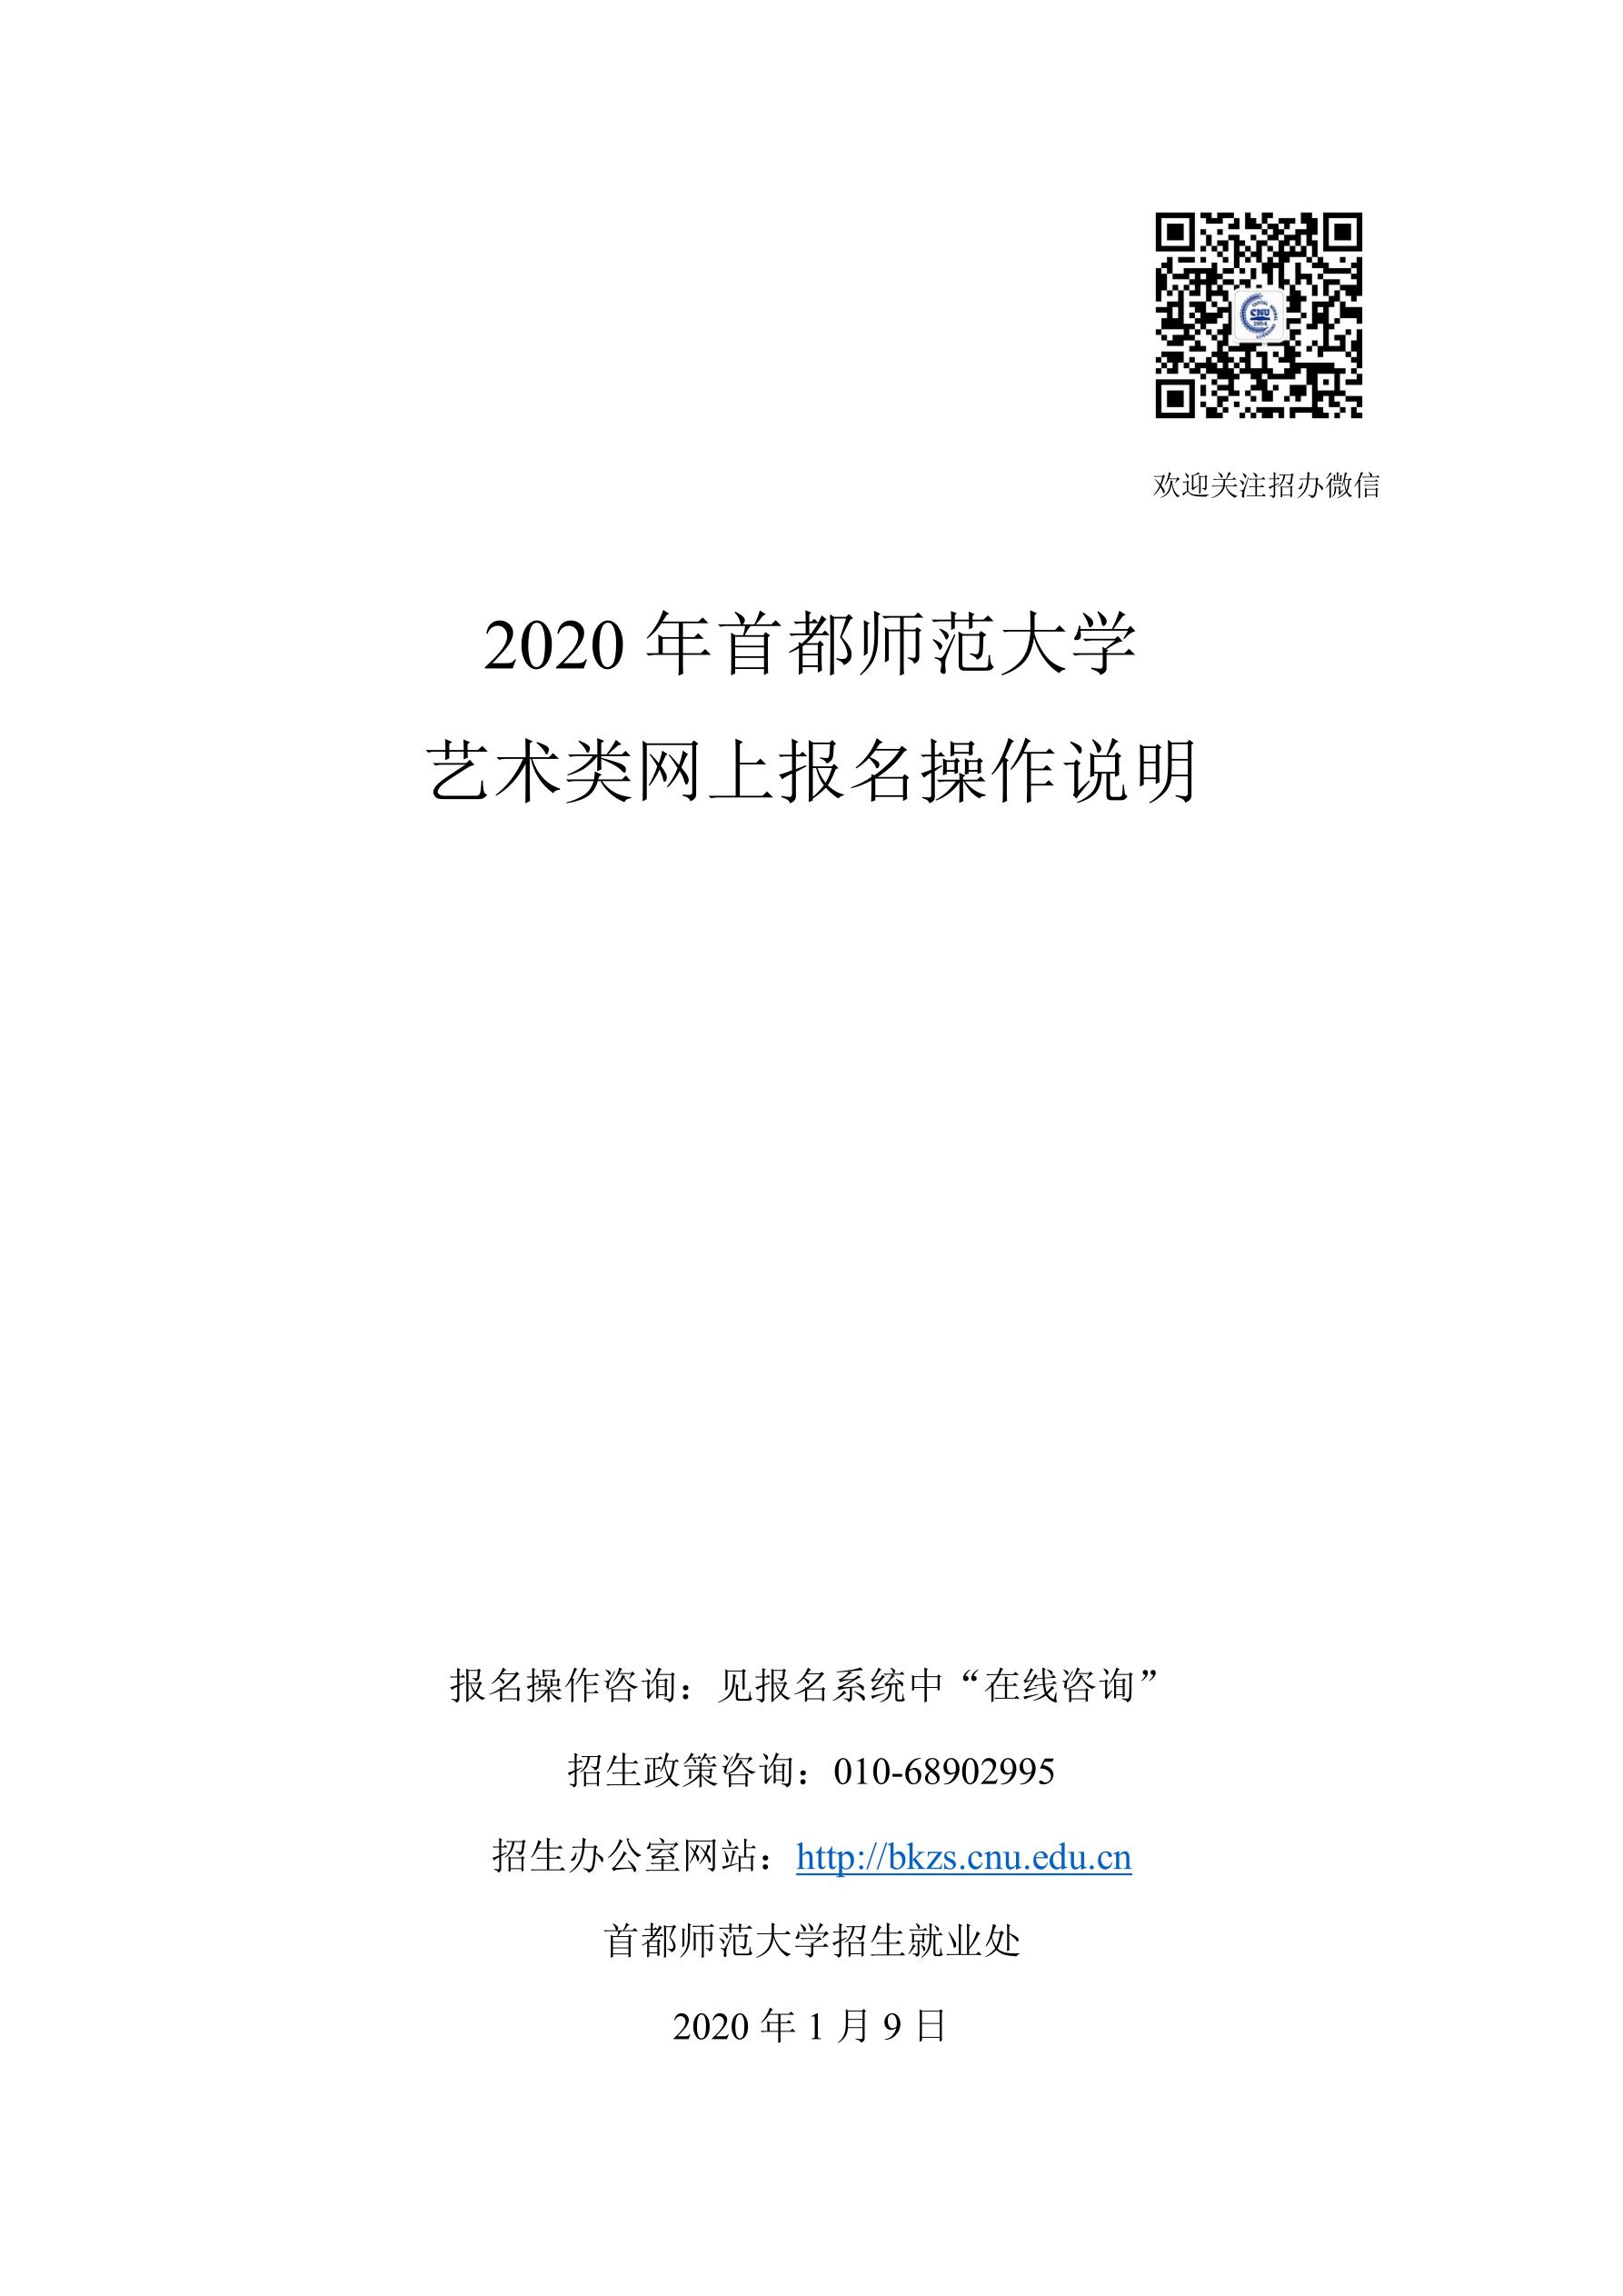 2020年首都师范大学网报说明